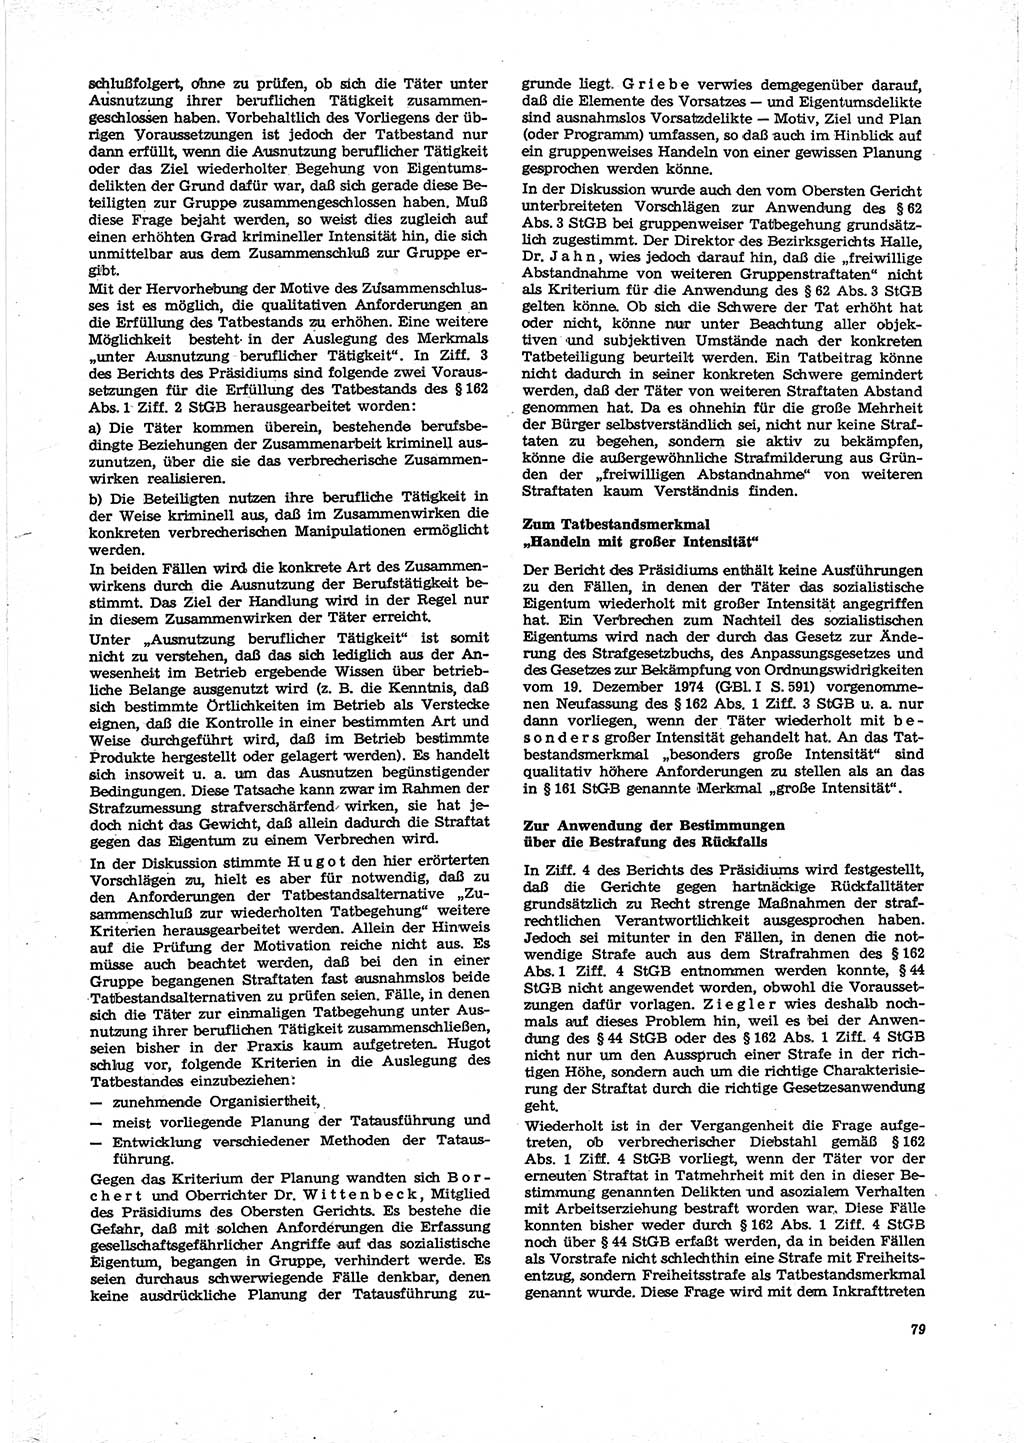 Neue Justiz (NJ), Zeitschrift für Recht und Rechtswissenschaft [Deutsche Demokratische Republik (DDR)], 29. Jahrgang 1975, Seite 79 (NJ DDR 1975, S. 79)